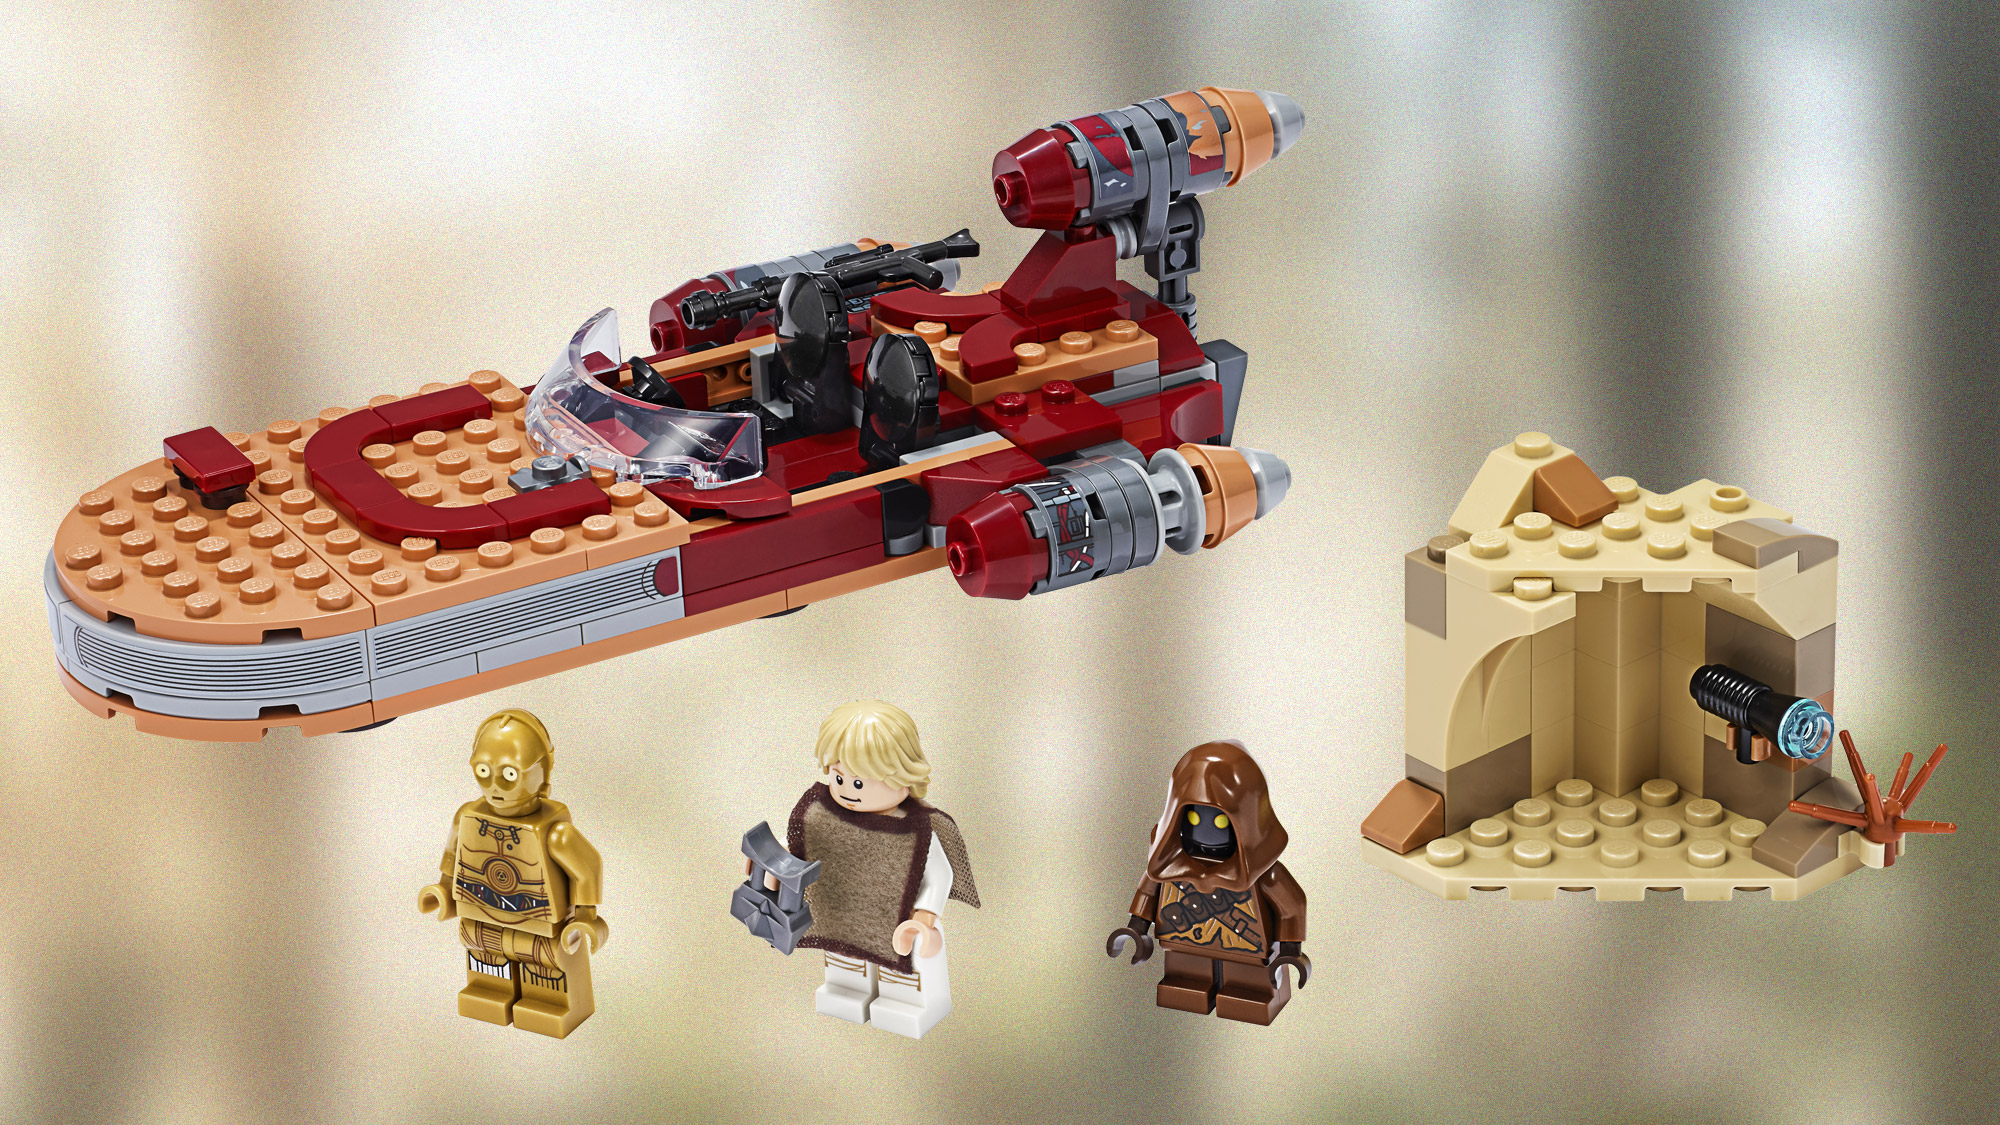 Lego Star Wars Sets for 2020